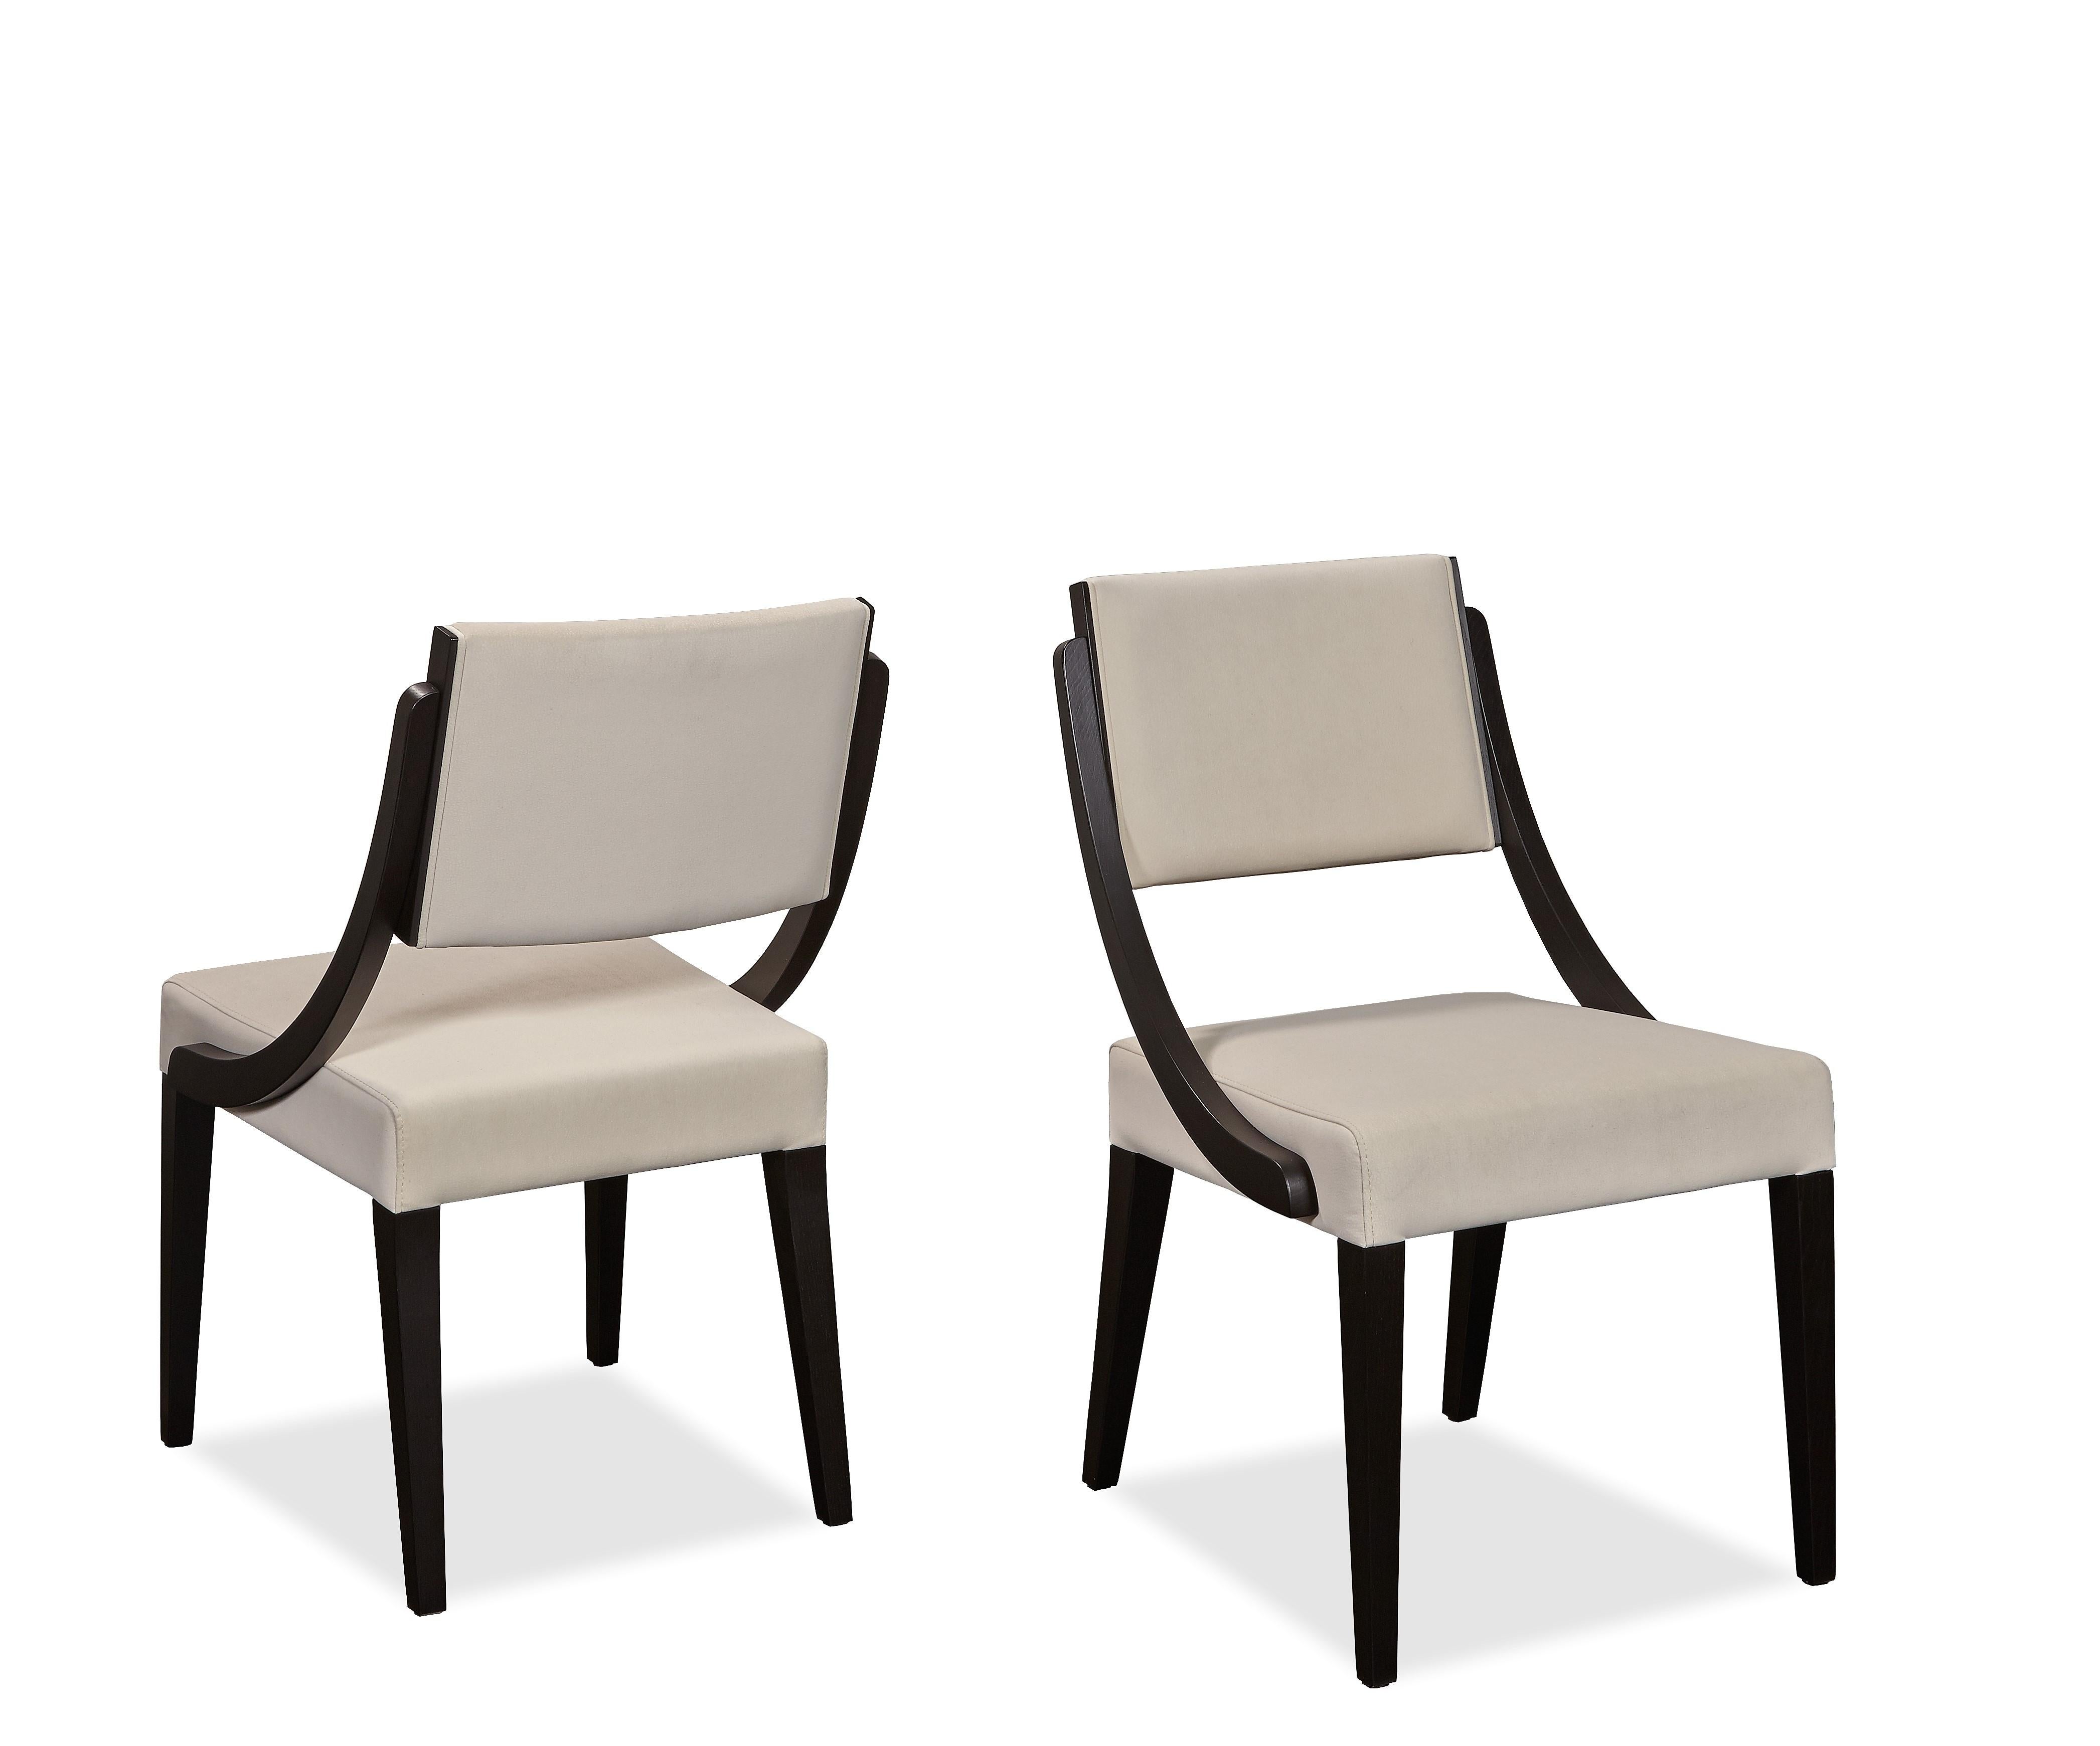 Das minimalistische Design der Stühle vermittelt ein Gefühl von Raffinesse und bietet gleichzeitig Komfort. Gebaut in
gestell aus schwarzer Eiche, bezogen mit hochwertigem cremefarbenem Leder.
100% europäisches handgefertigtes Produkt.
Erhältlich in